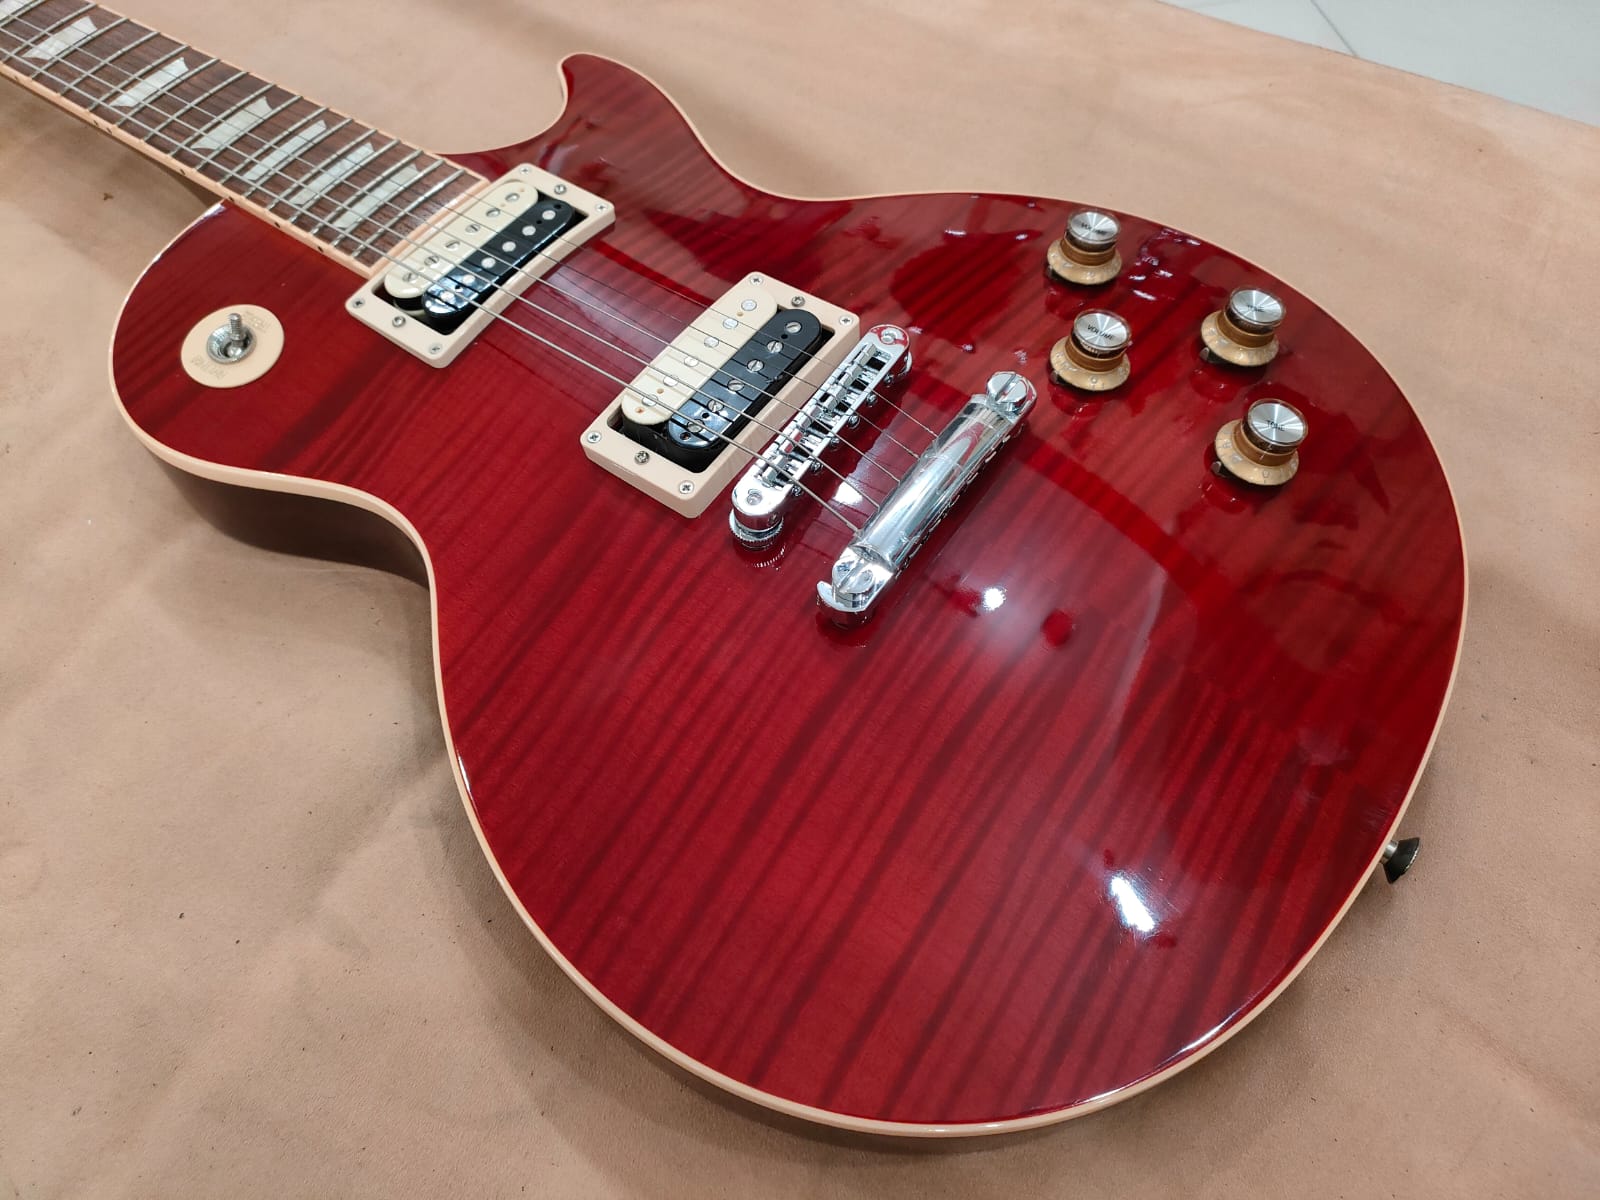 Gibson Gibson Slash Signature Les Paul - Rosso Corsa s1441 - HIENDGUITAR   Gibson GUITAR